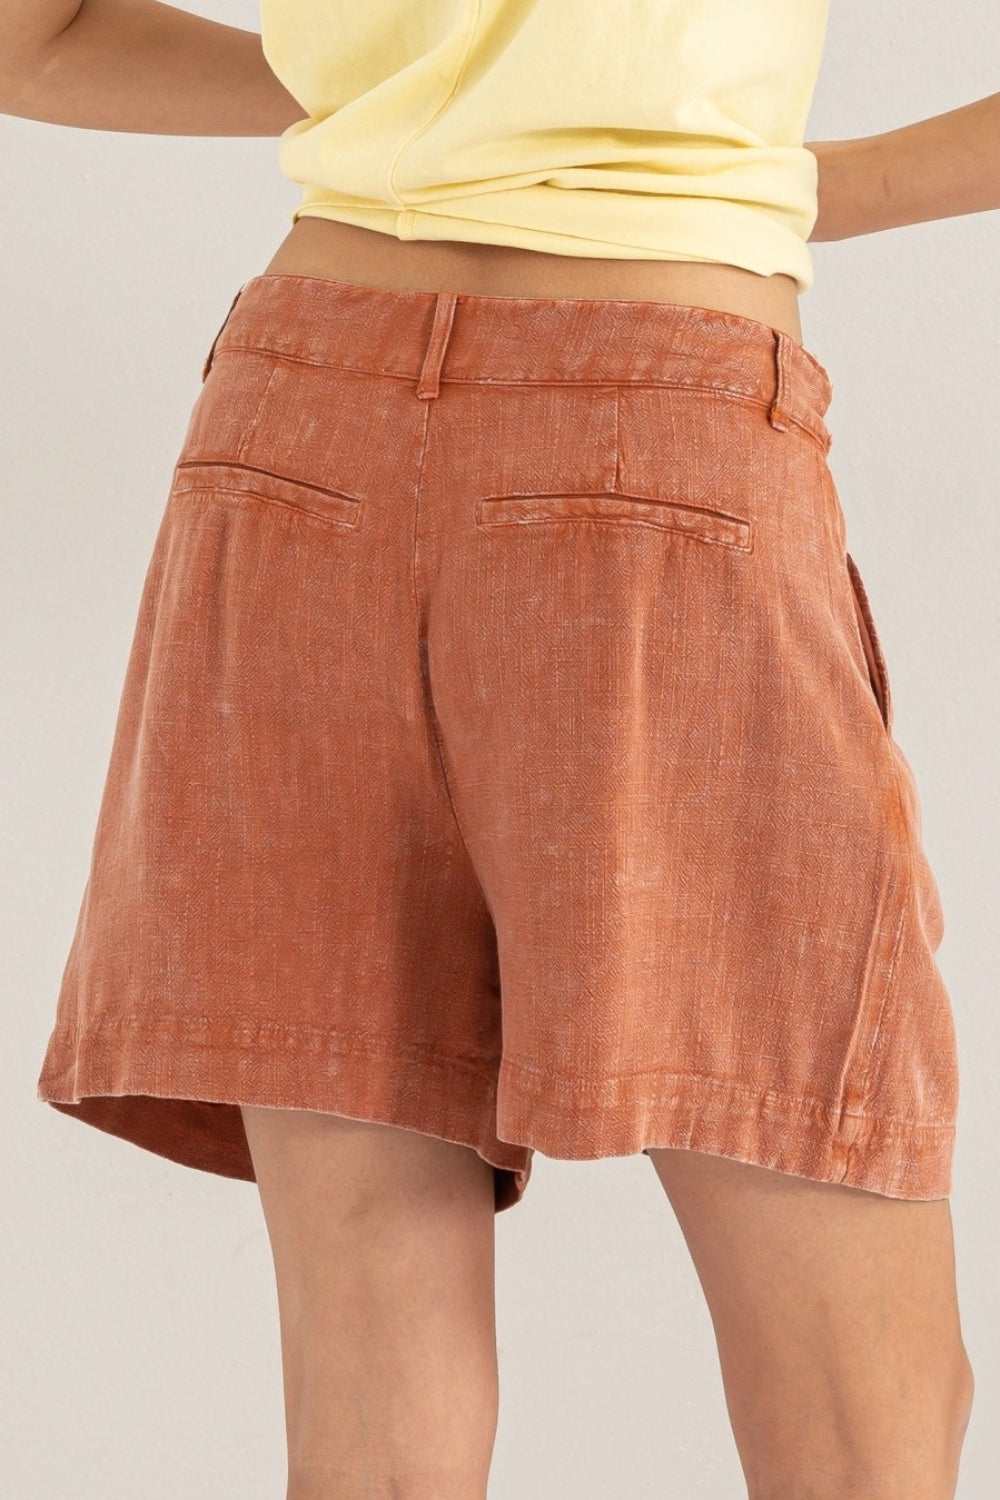 HYFVE High Waist Pleated Linen Shorts